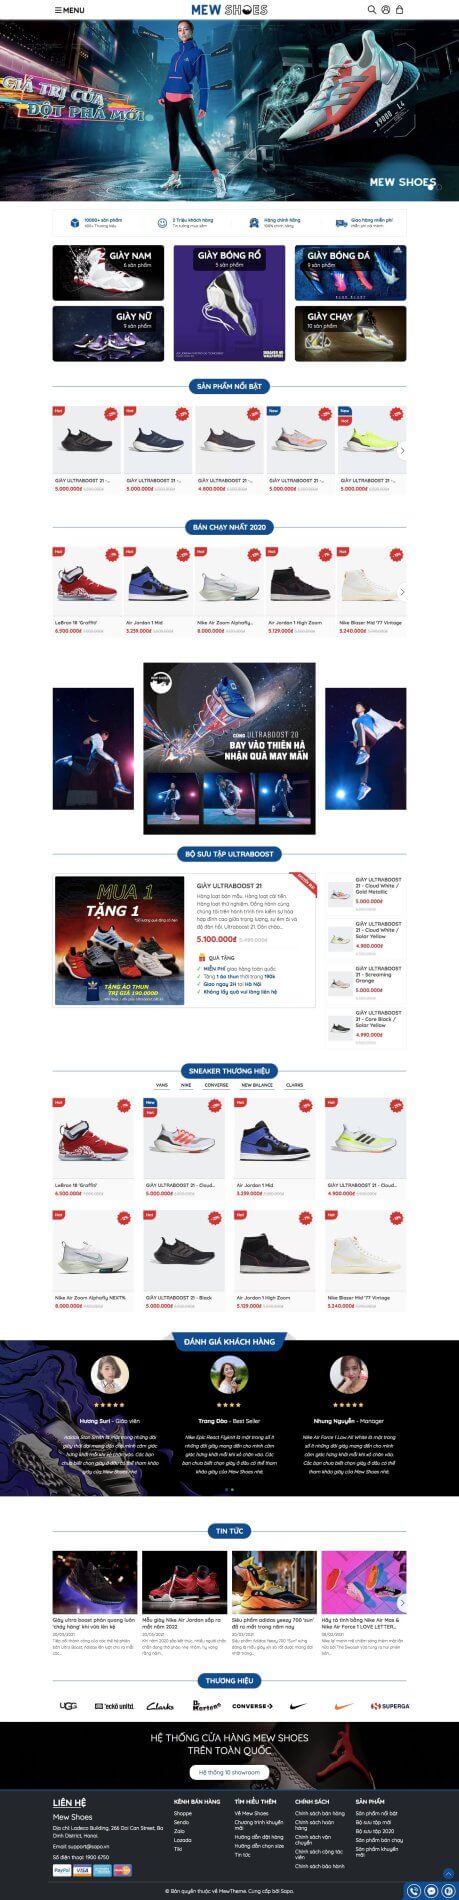 Giao diện website bán hàng giày dép thể thao Mew Shoes 2